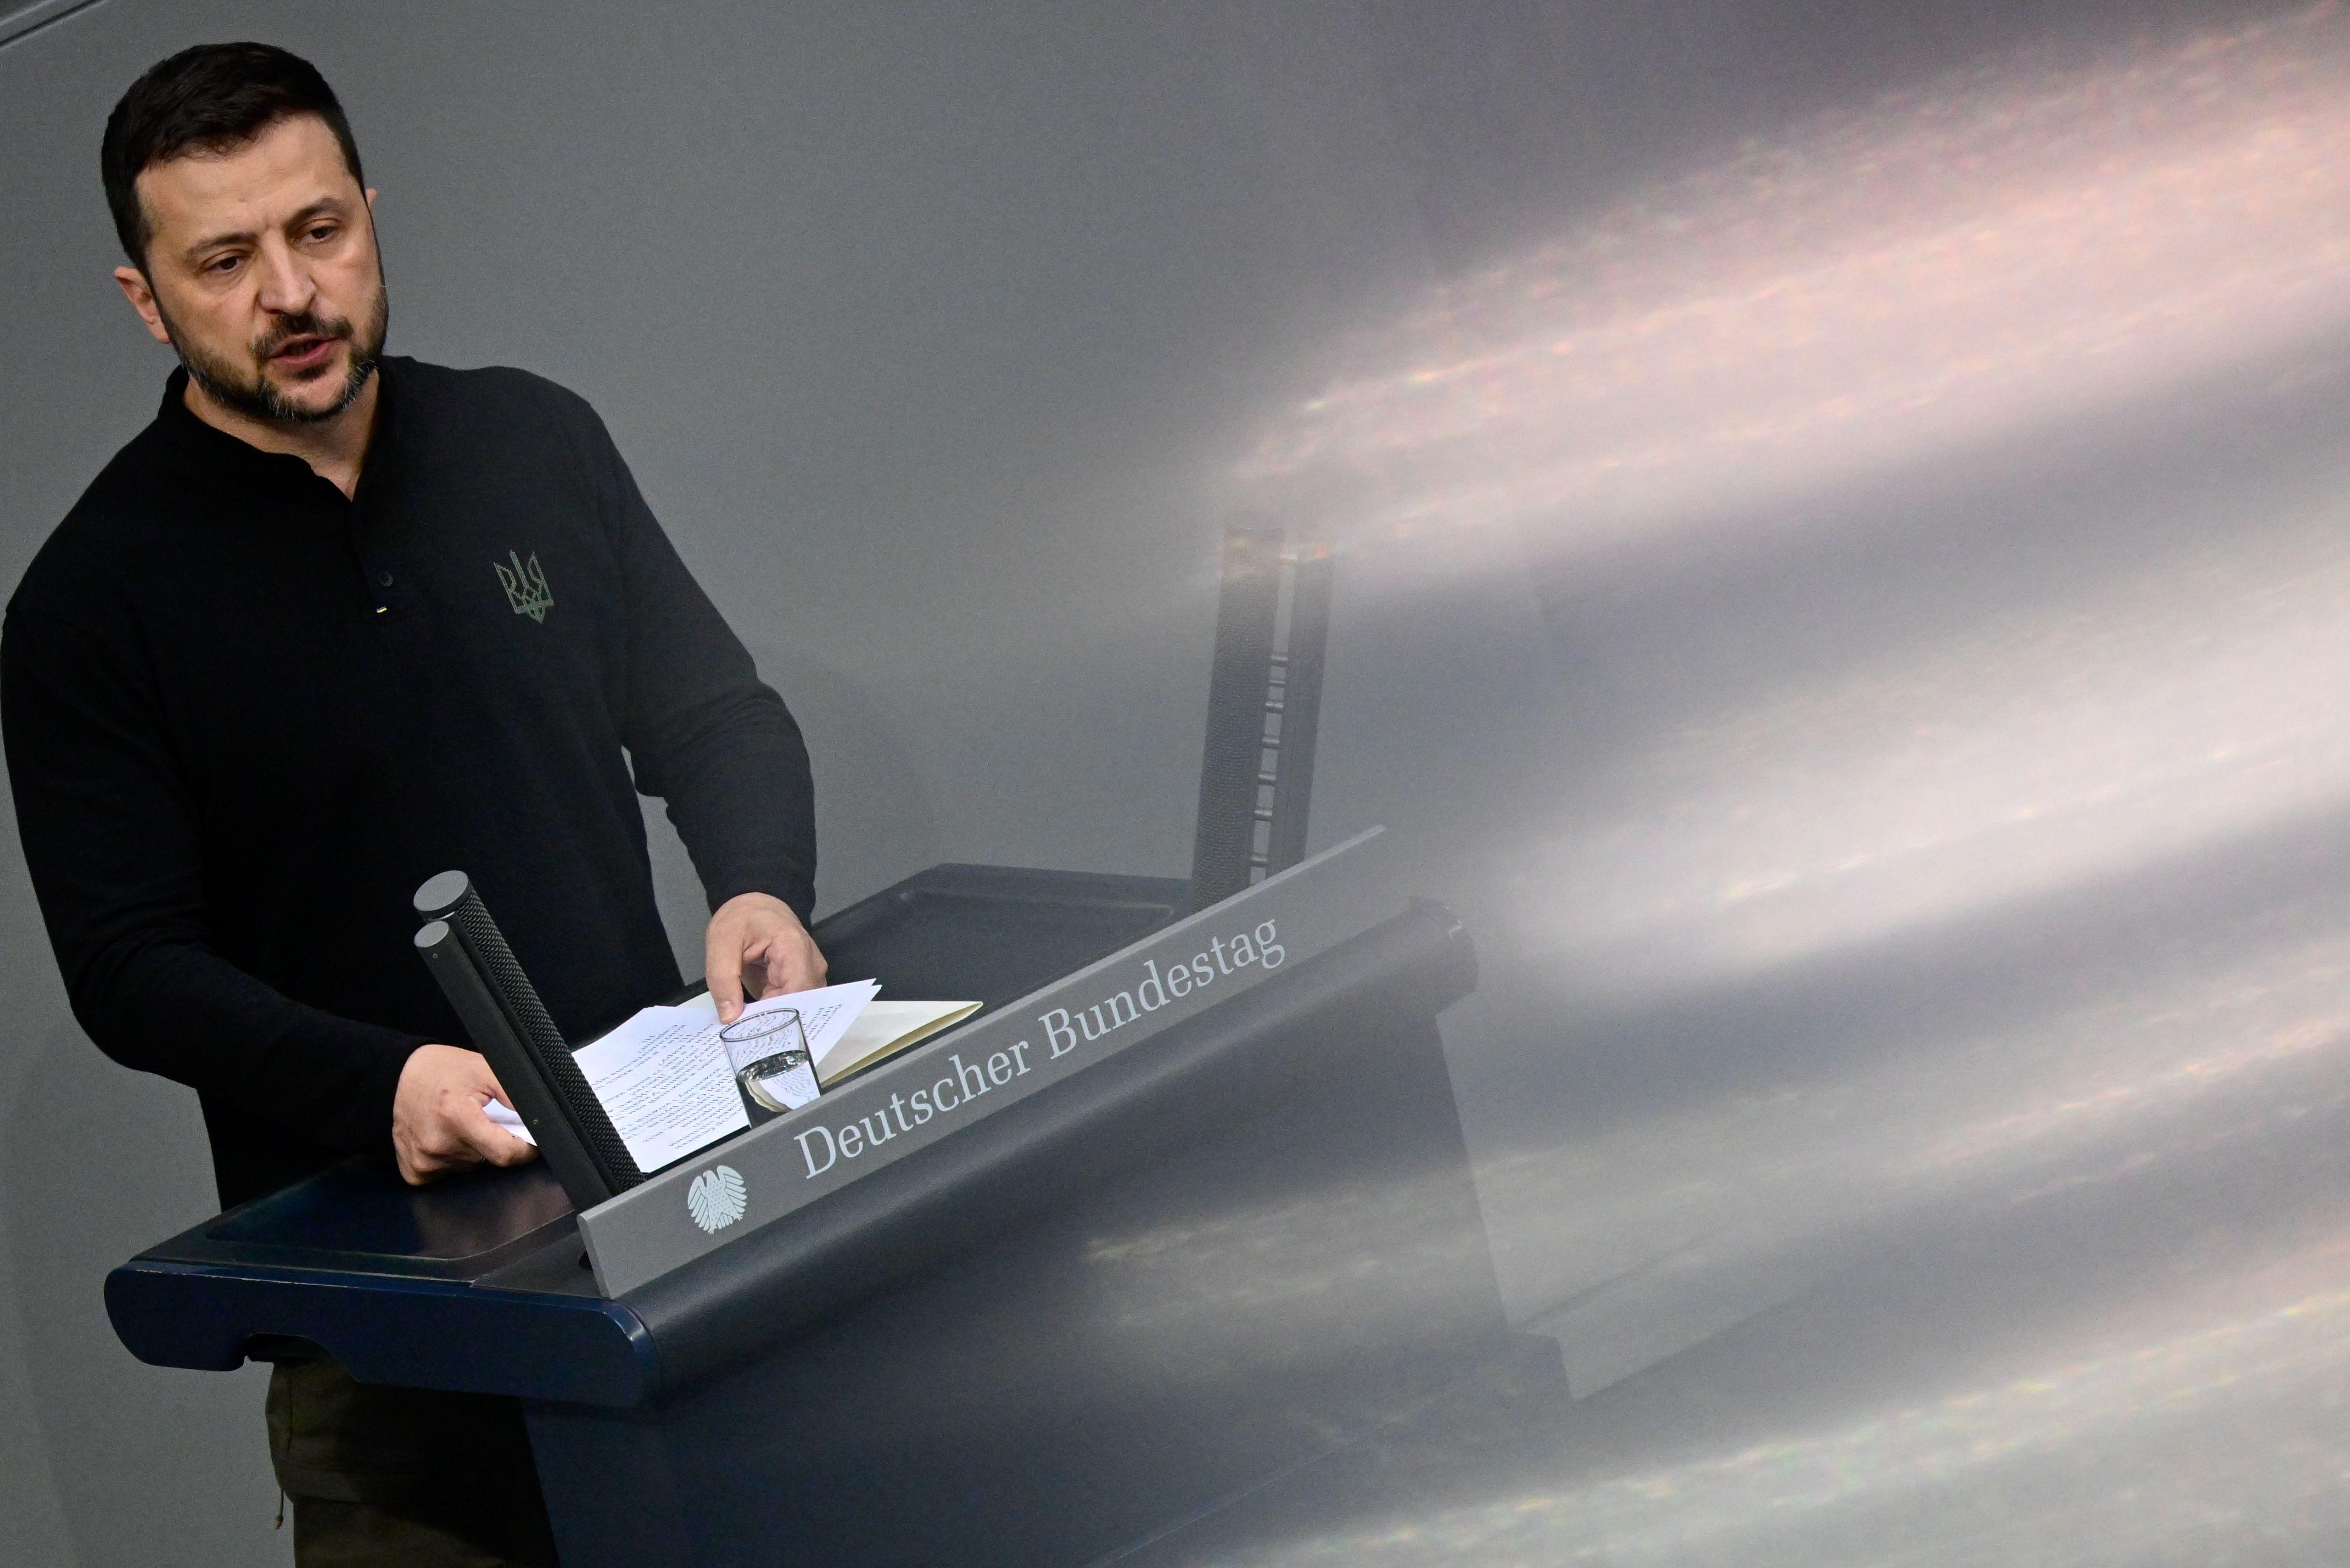 Zelensky al Bundestag - Afd e Bsw boicottano il suo discorso e disertano